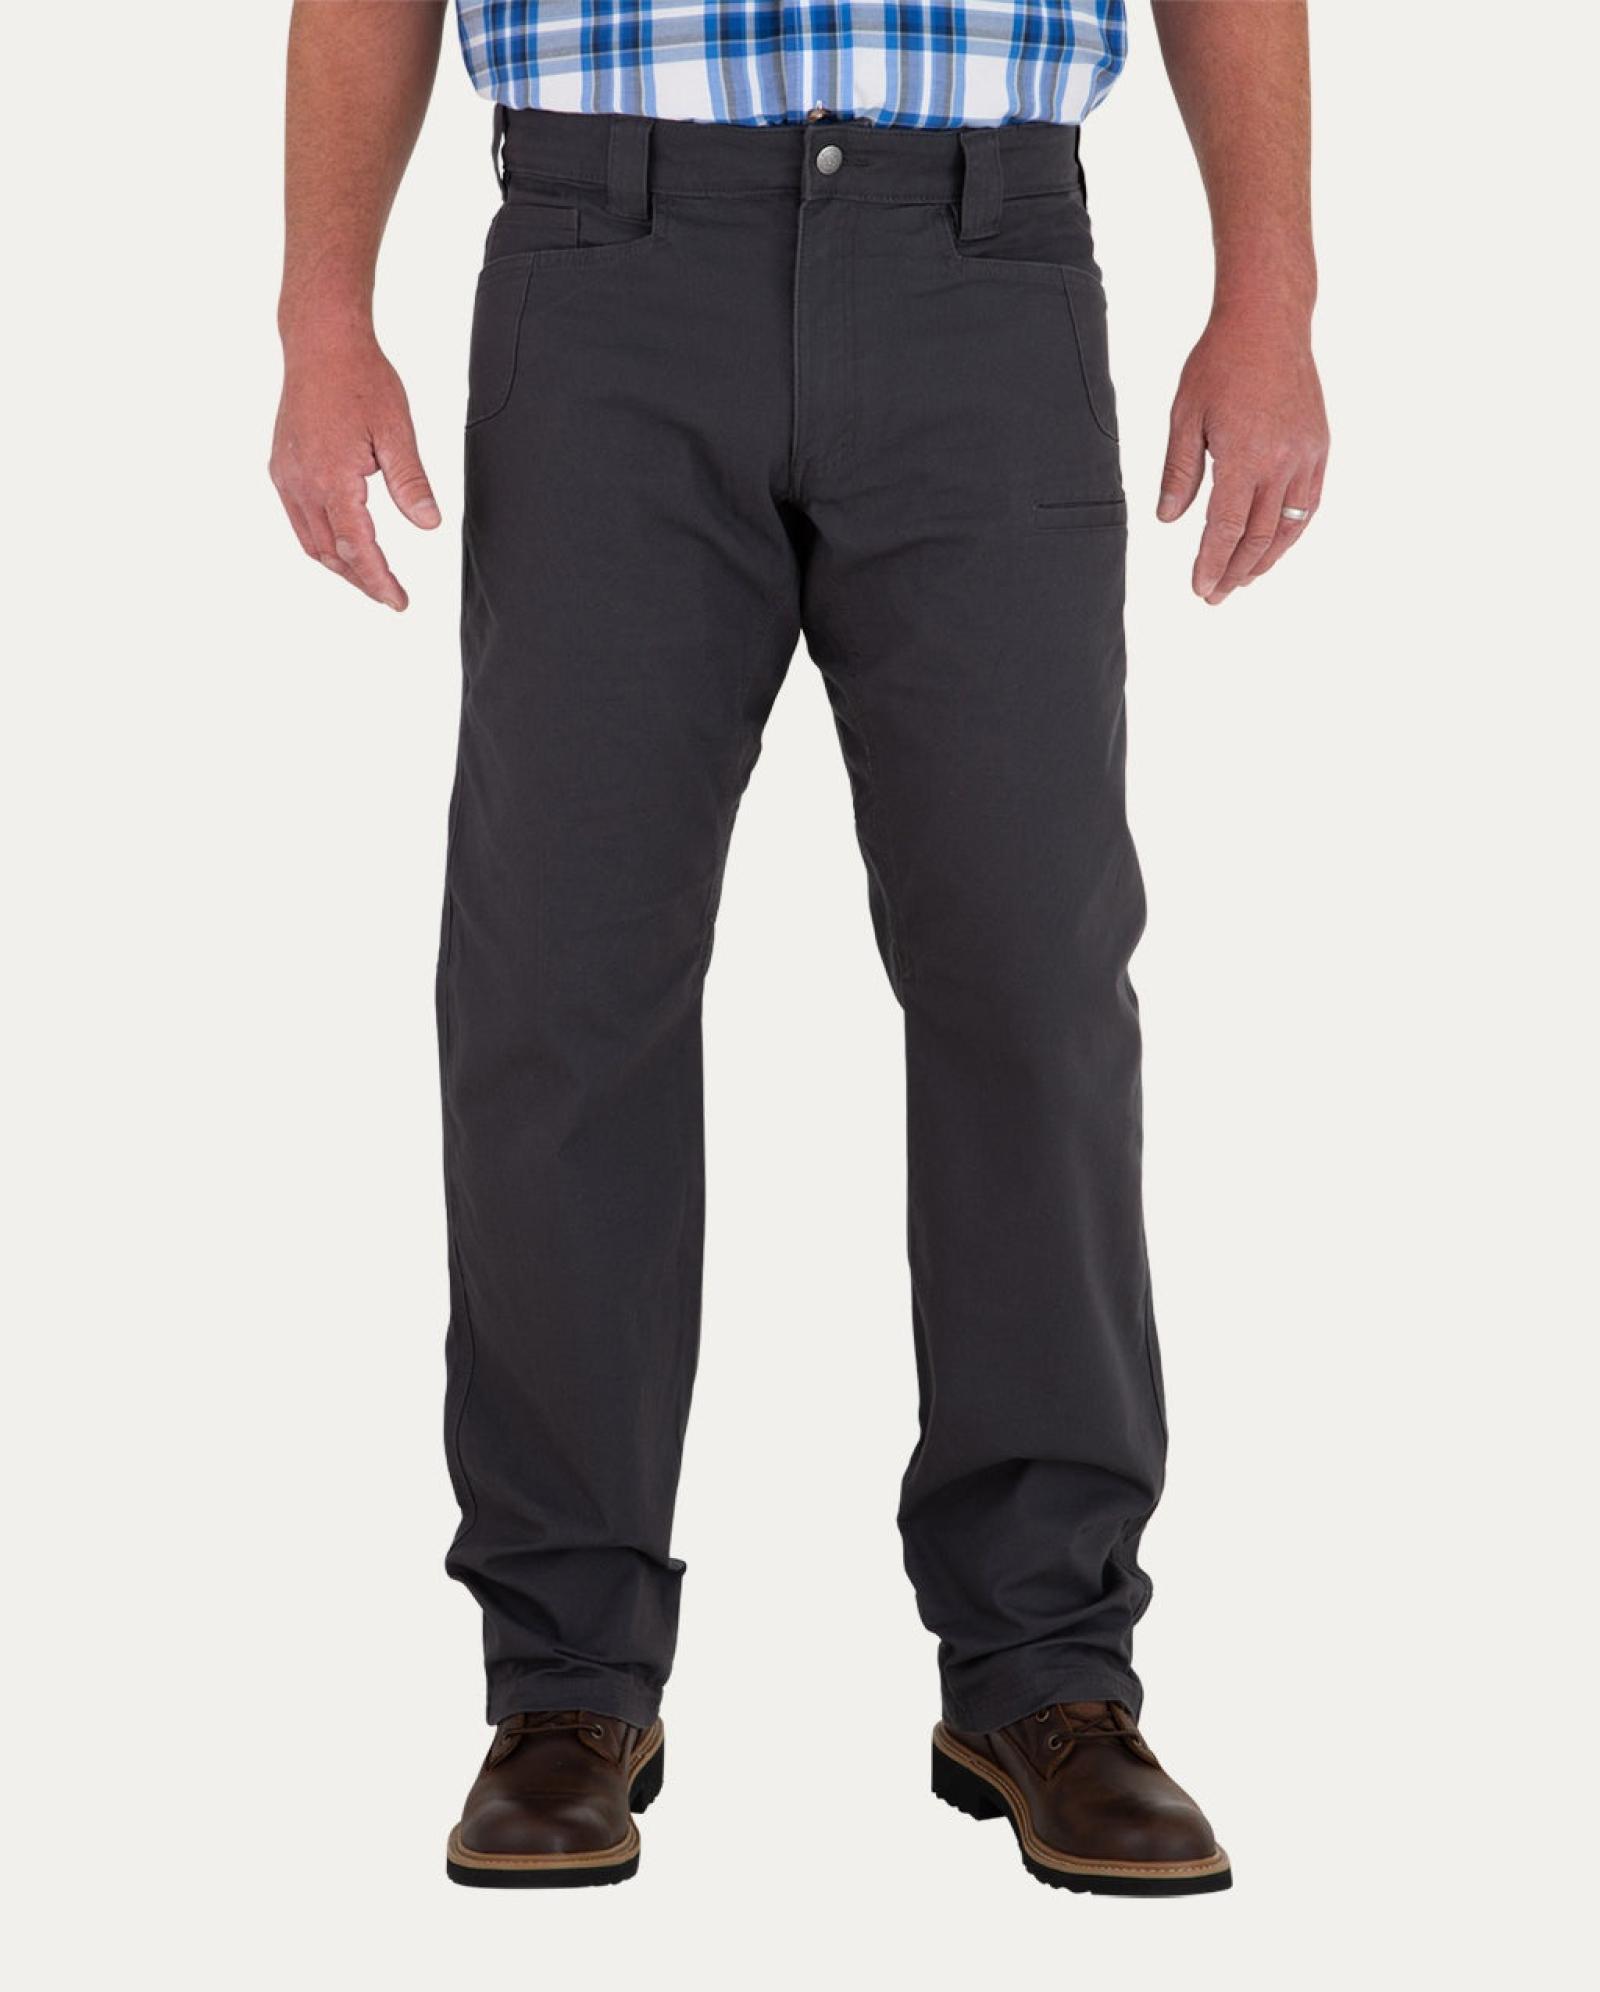 Noble Outfitters Men's Flex Canvas Work Pants